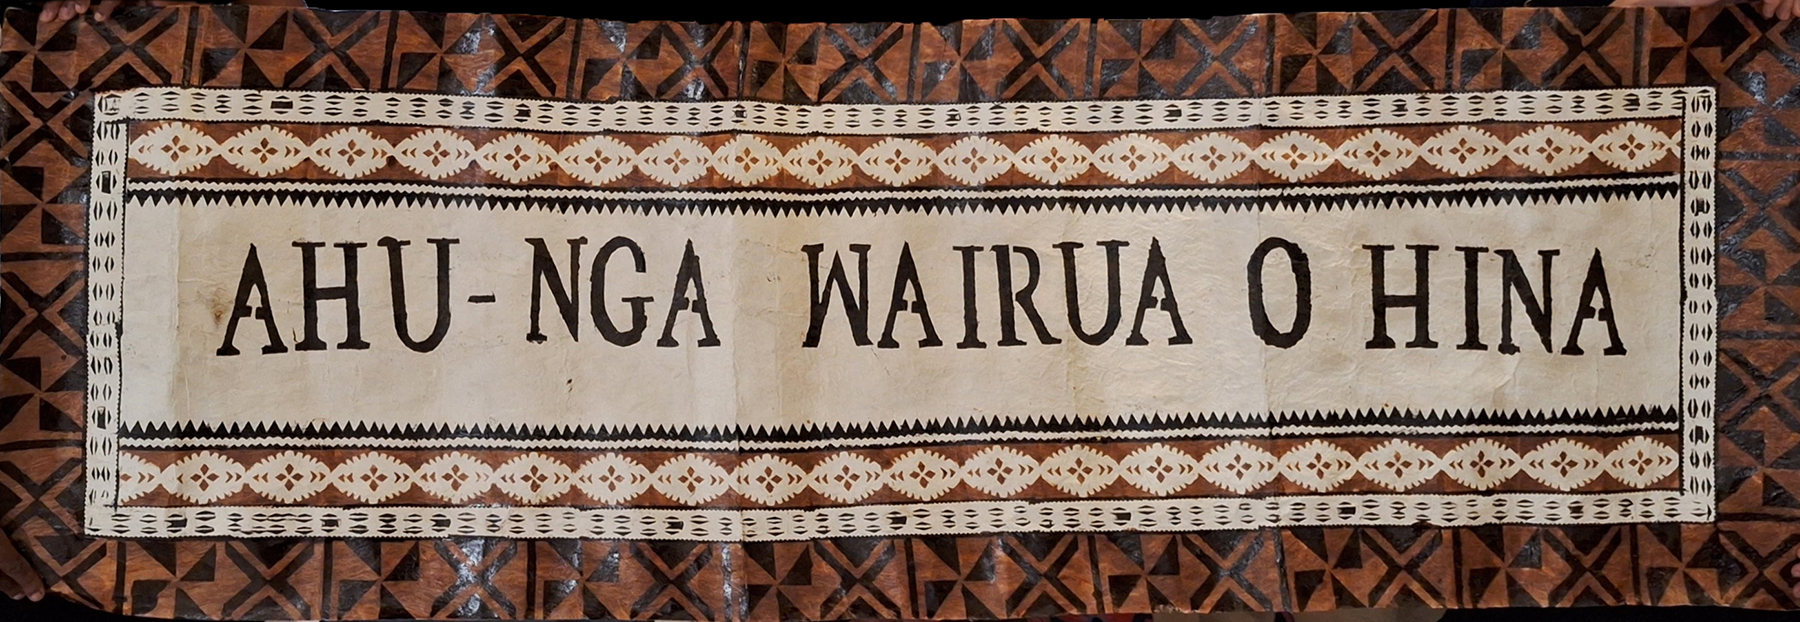 A tapa cloth banner with the words Ahu-nga wairua o hina